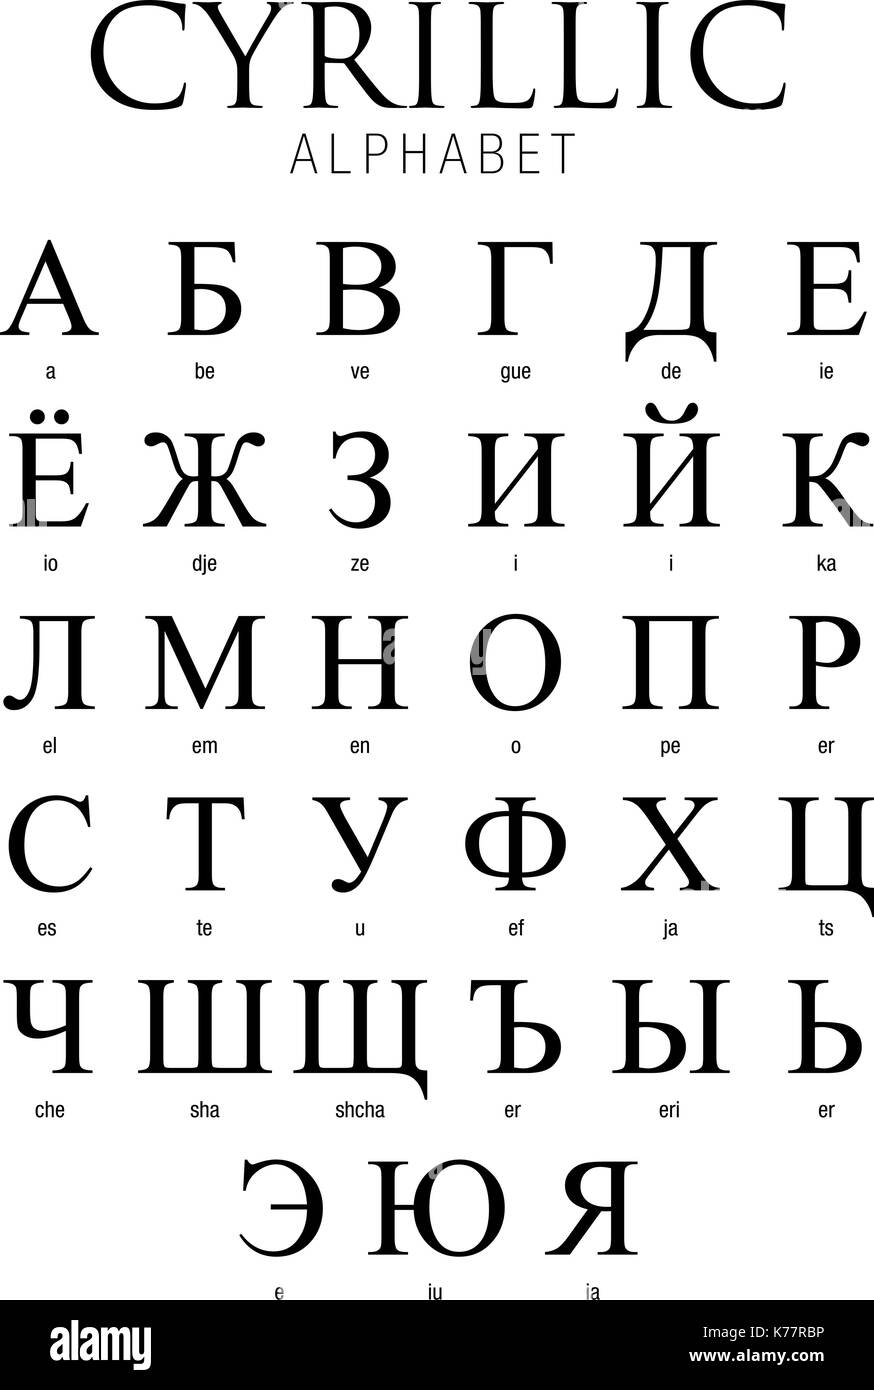 Alfabeto Cirílico sobre fondo blanco - Imagen vectorial Ilustración del Vector